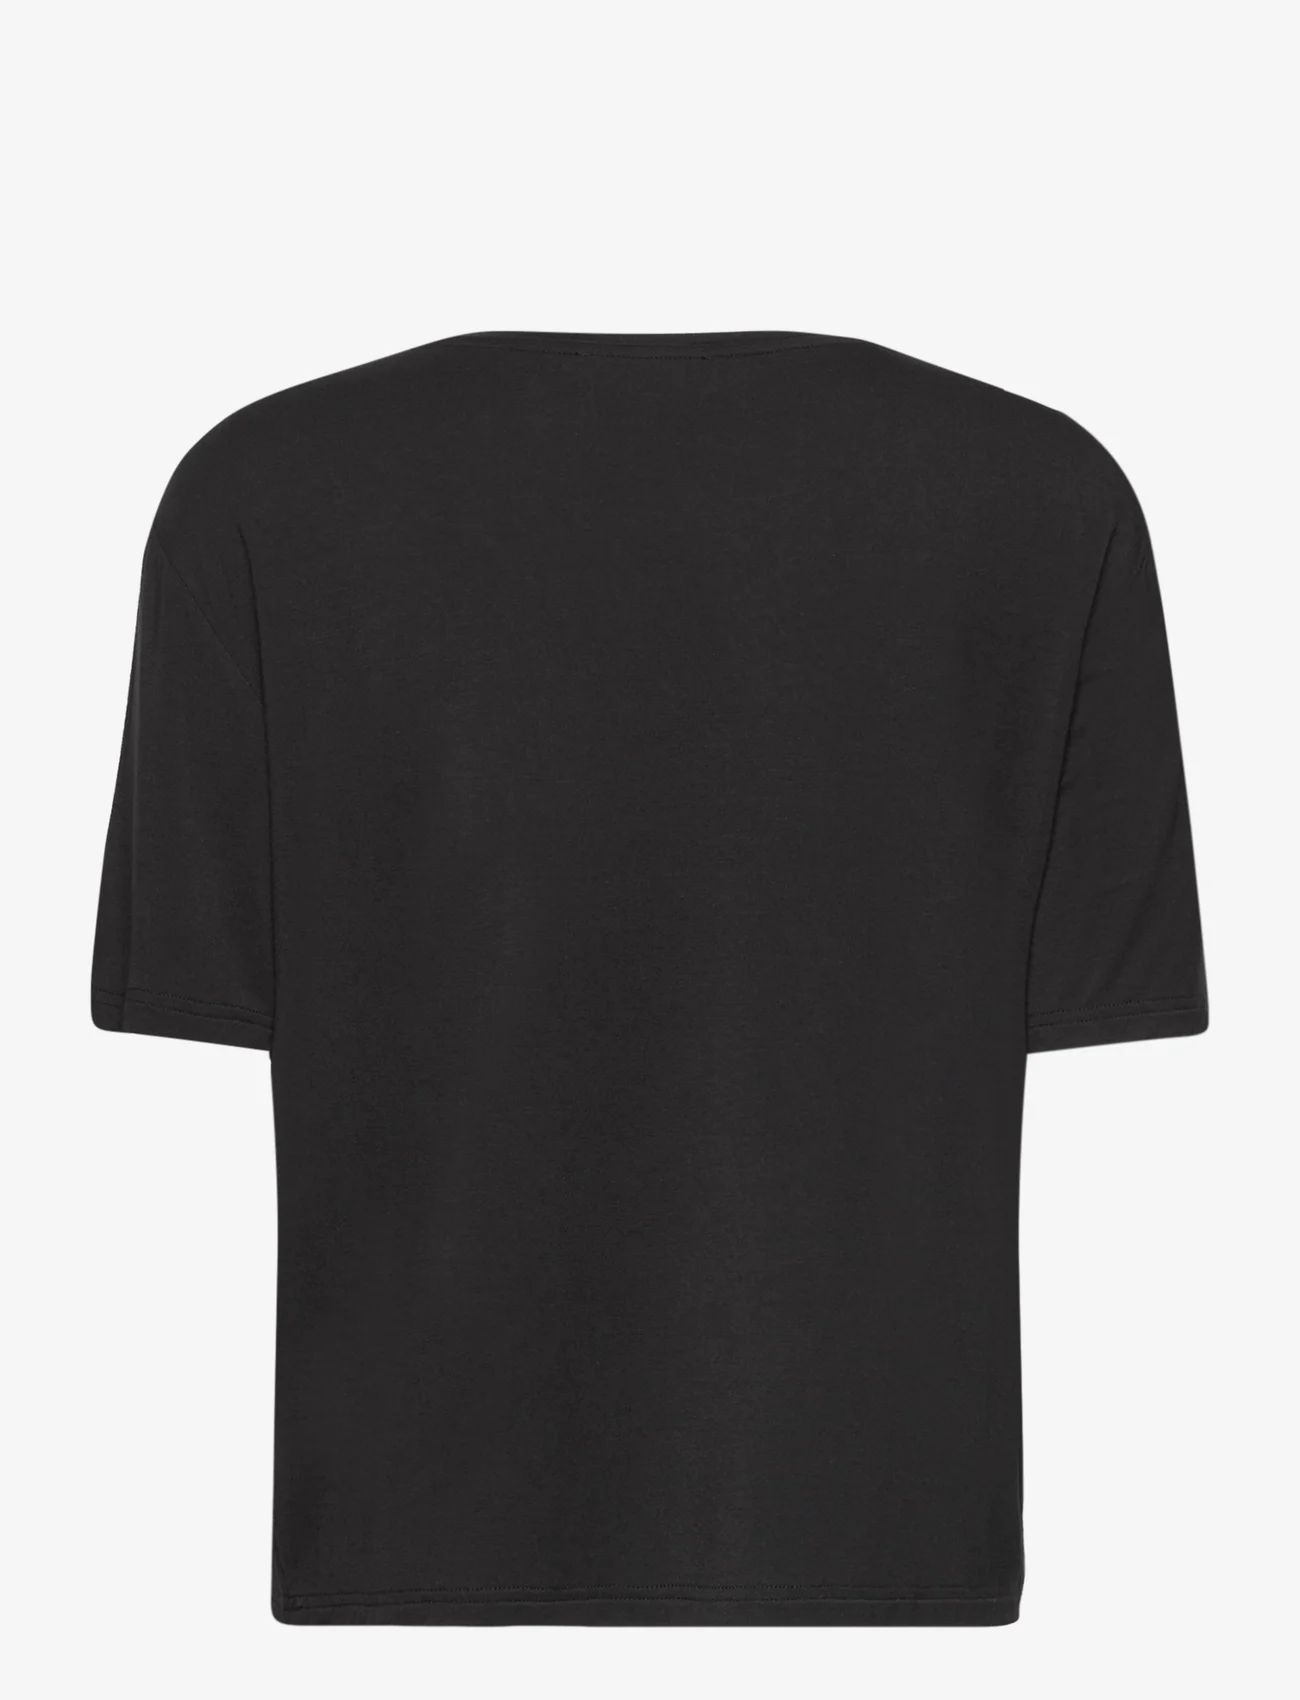 Rosemunde - RWBiarritz SS V-neck T-shirt - laveste priser - black - 1